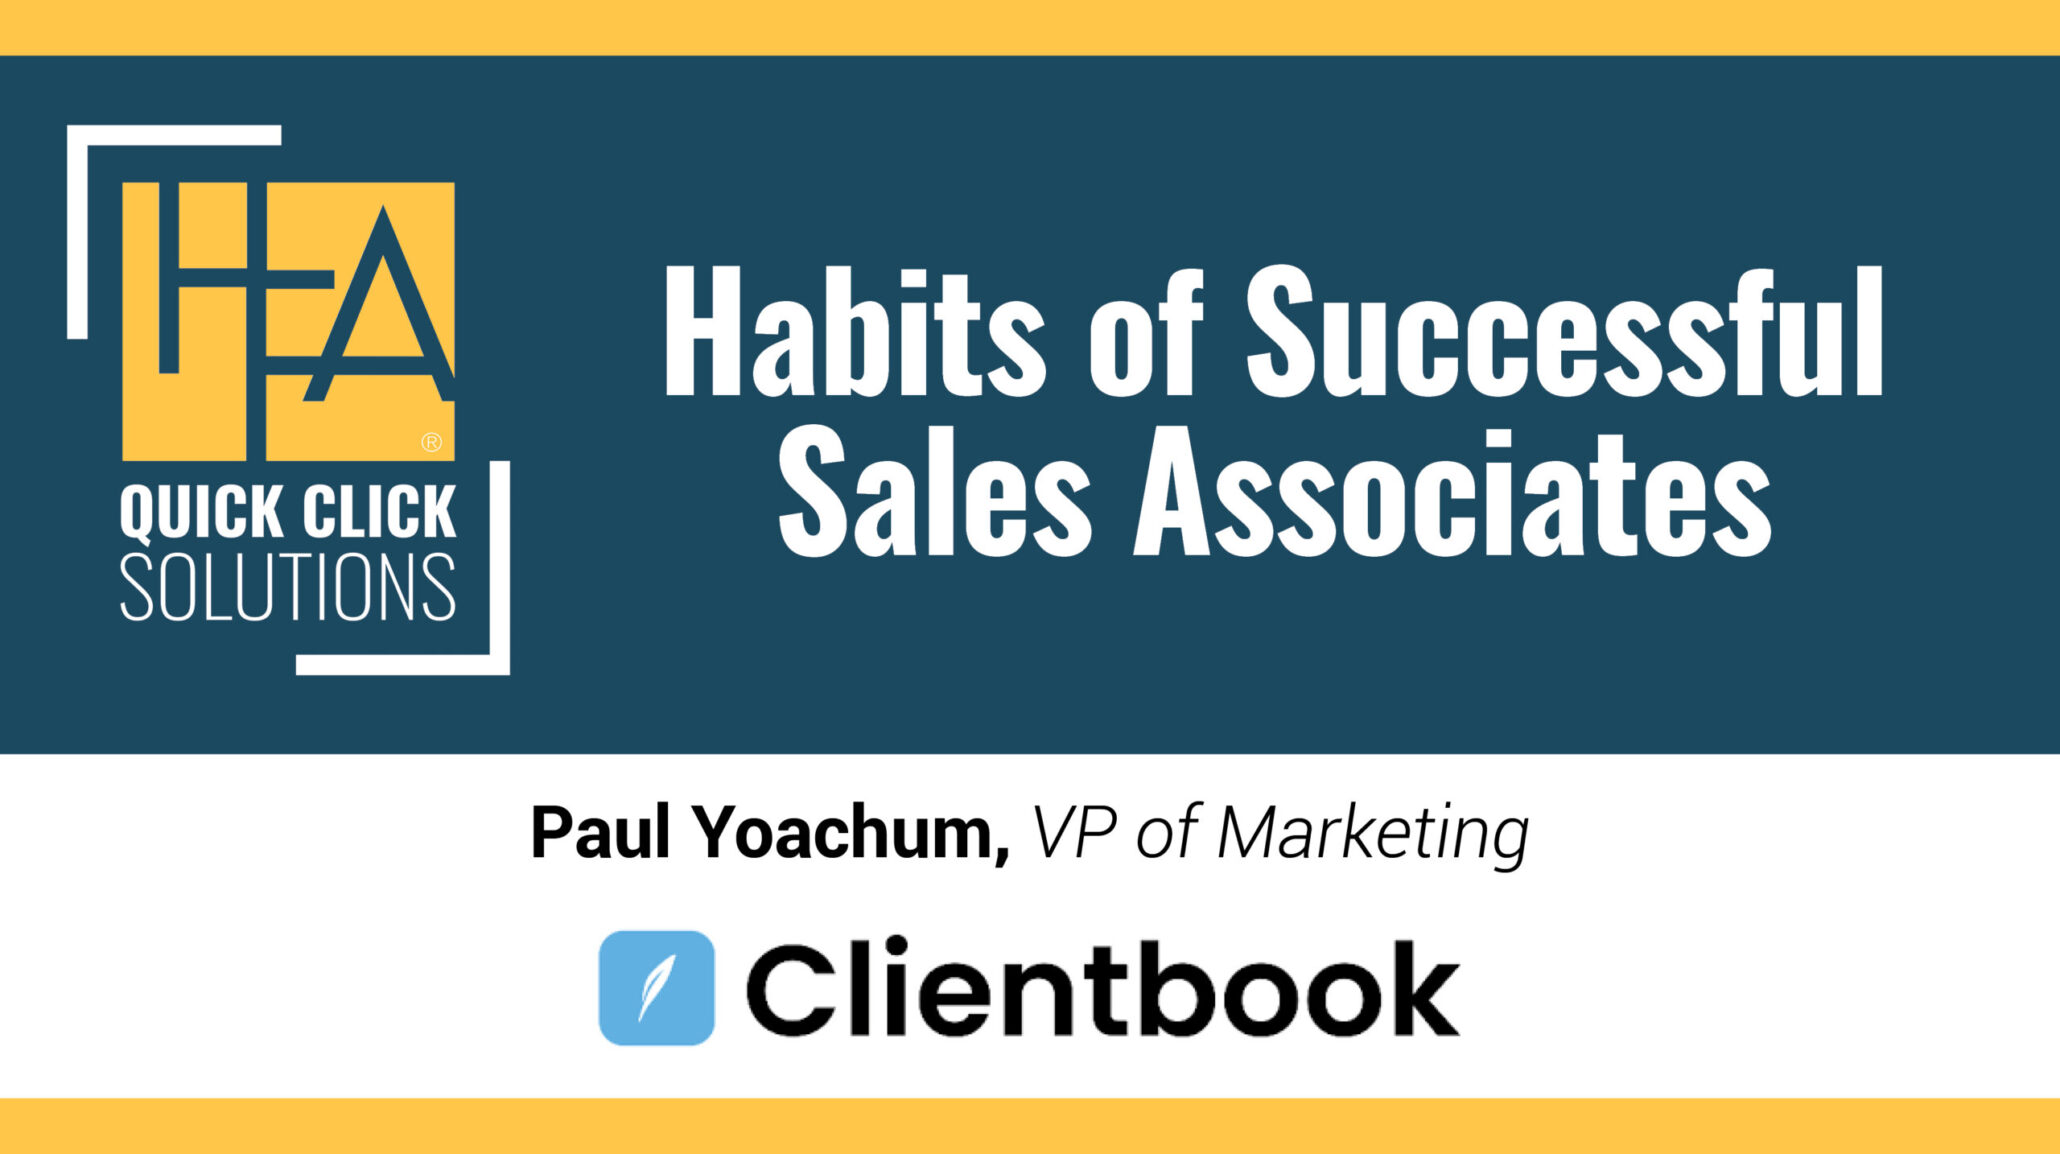 HFA_QCS_Habits of Successful Sales Associates